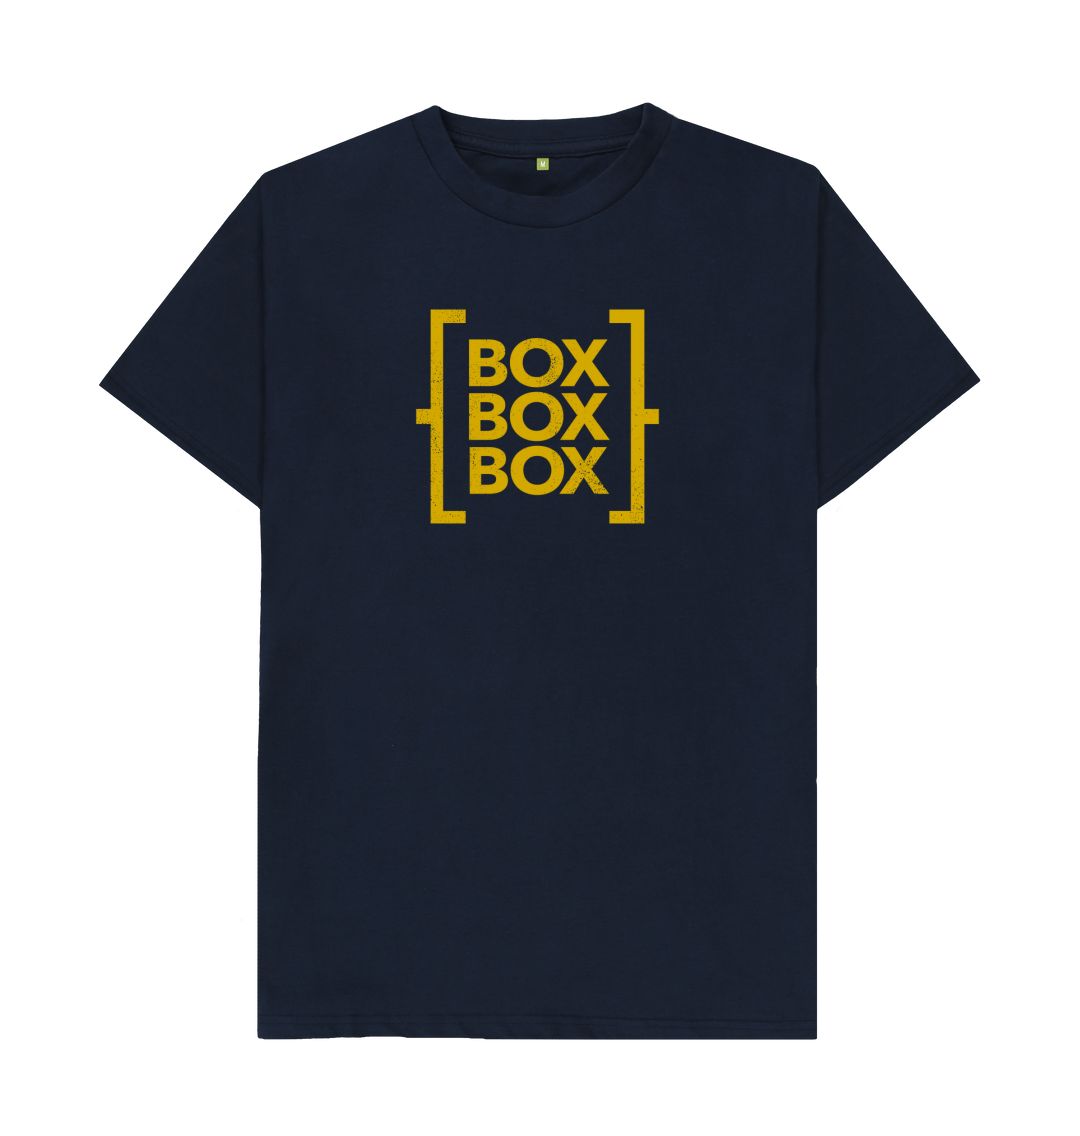 Navy Blue Box Box Box - The T-Shirt